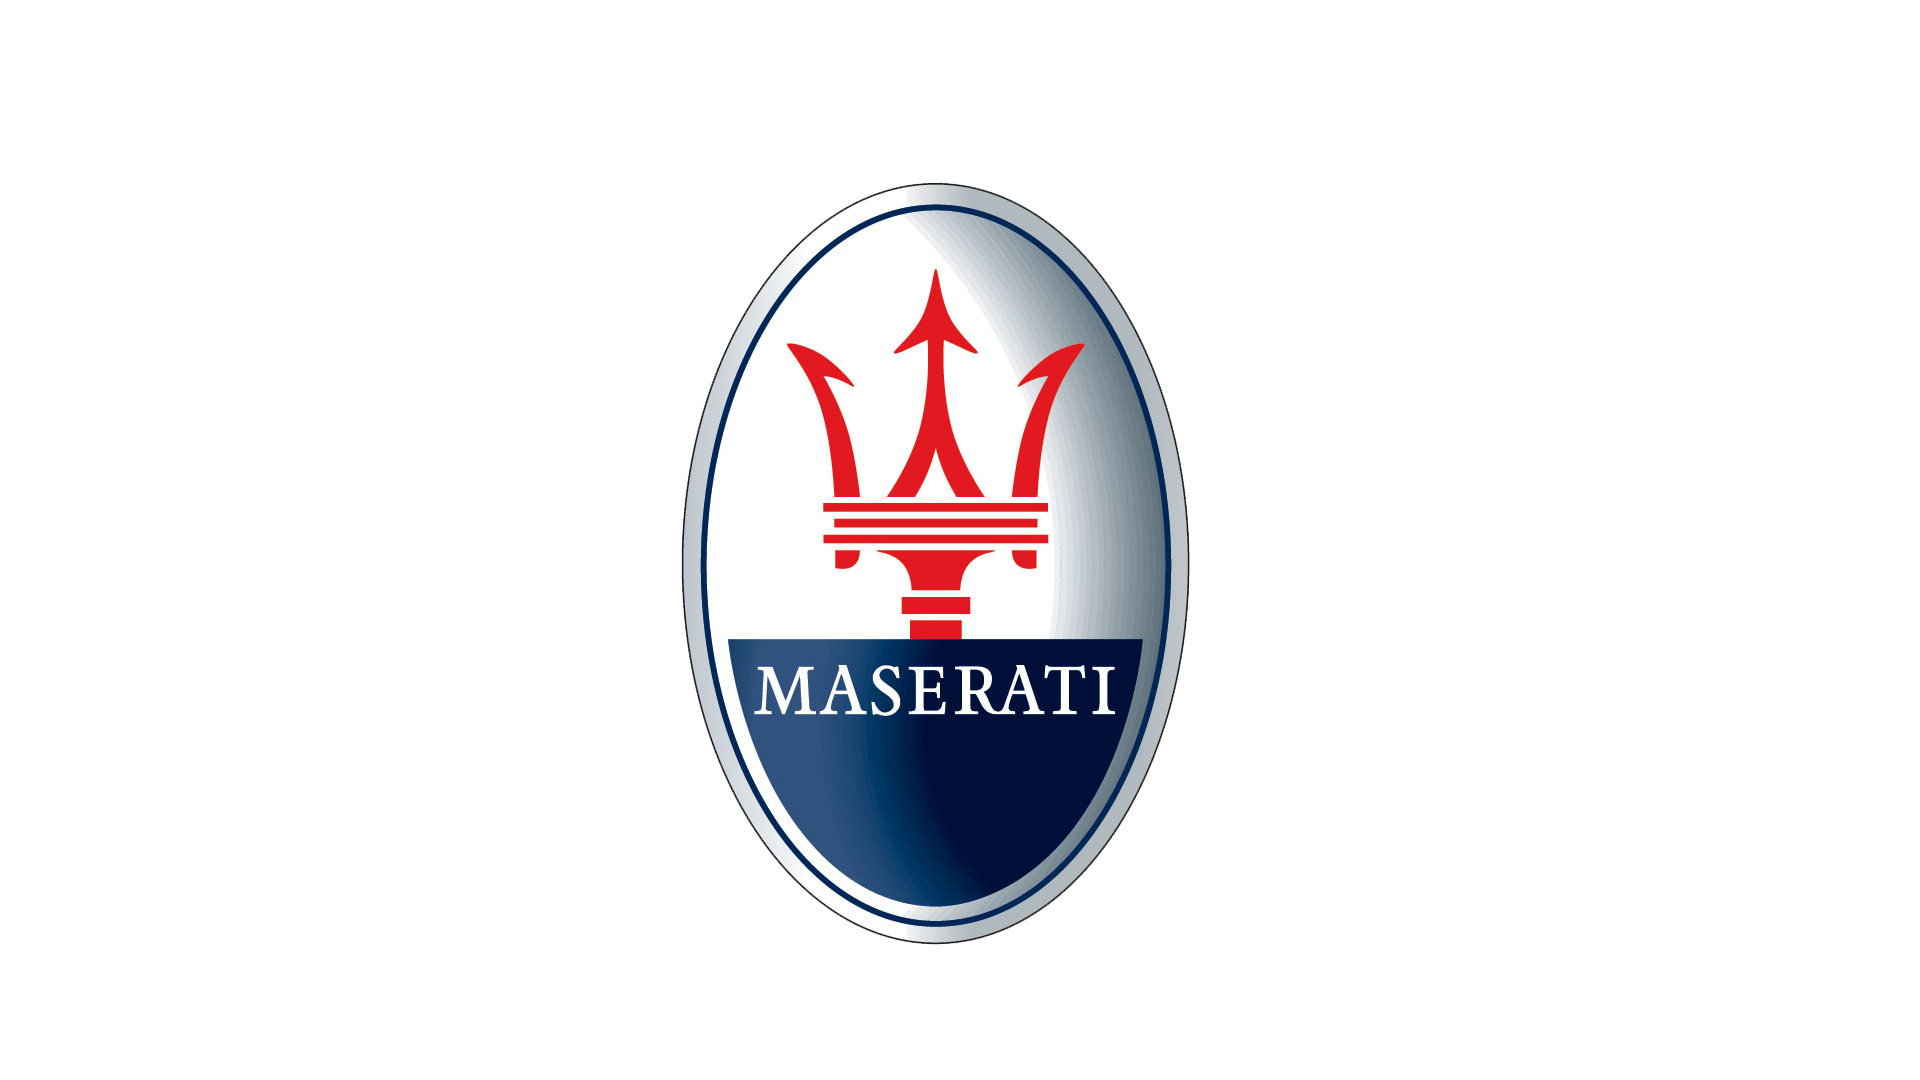 Maserati Car Wallpaper Computer Emblem Spa Forza PNG Image